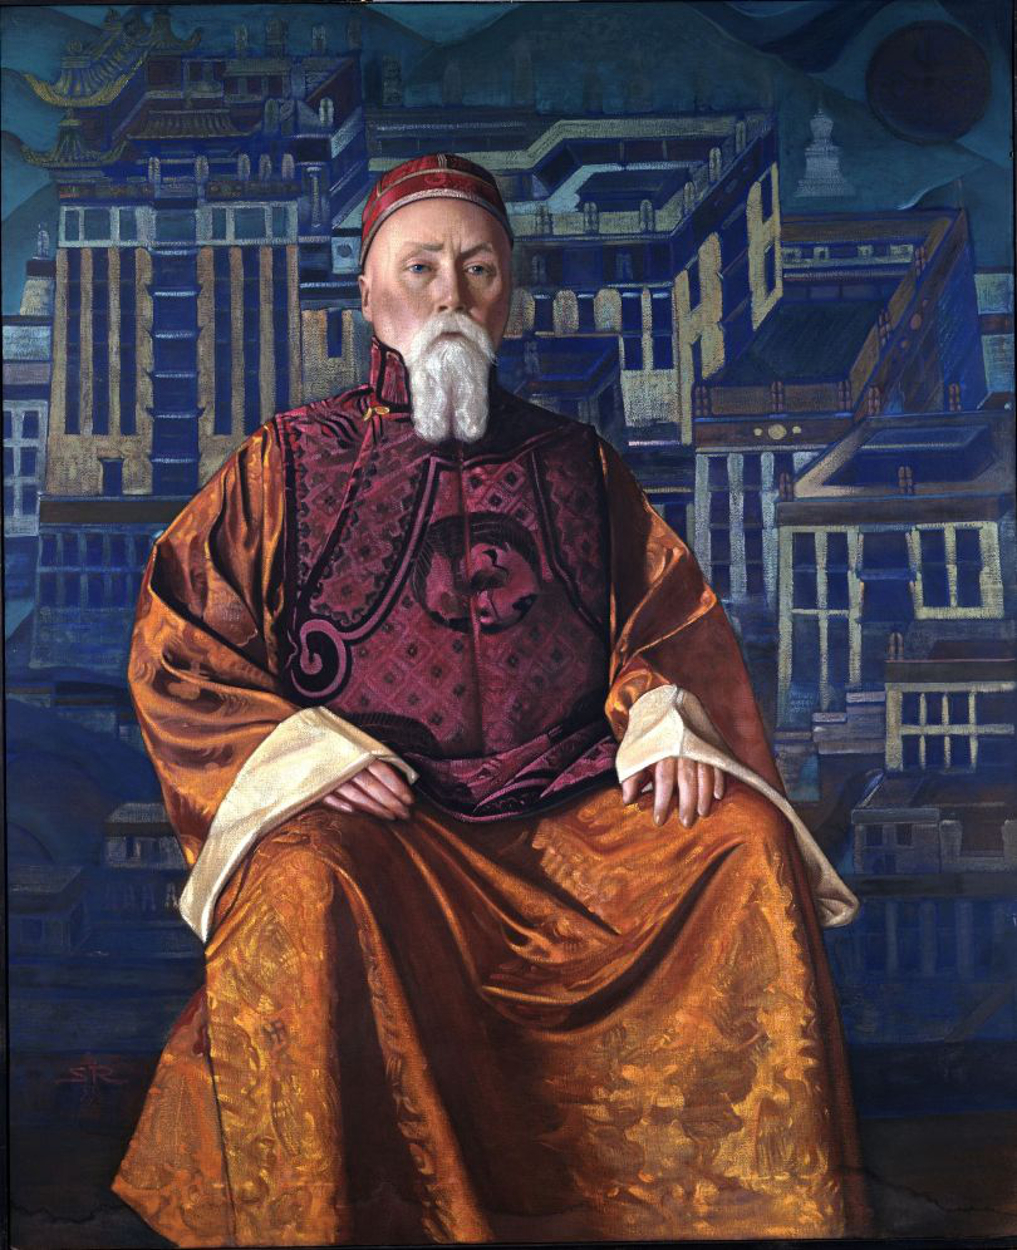 Nicholas Roerich - 9. Oktober 1874 - 13. Dezember 1947